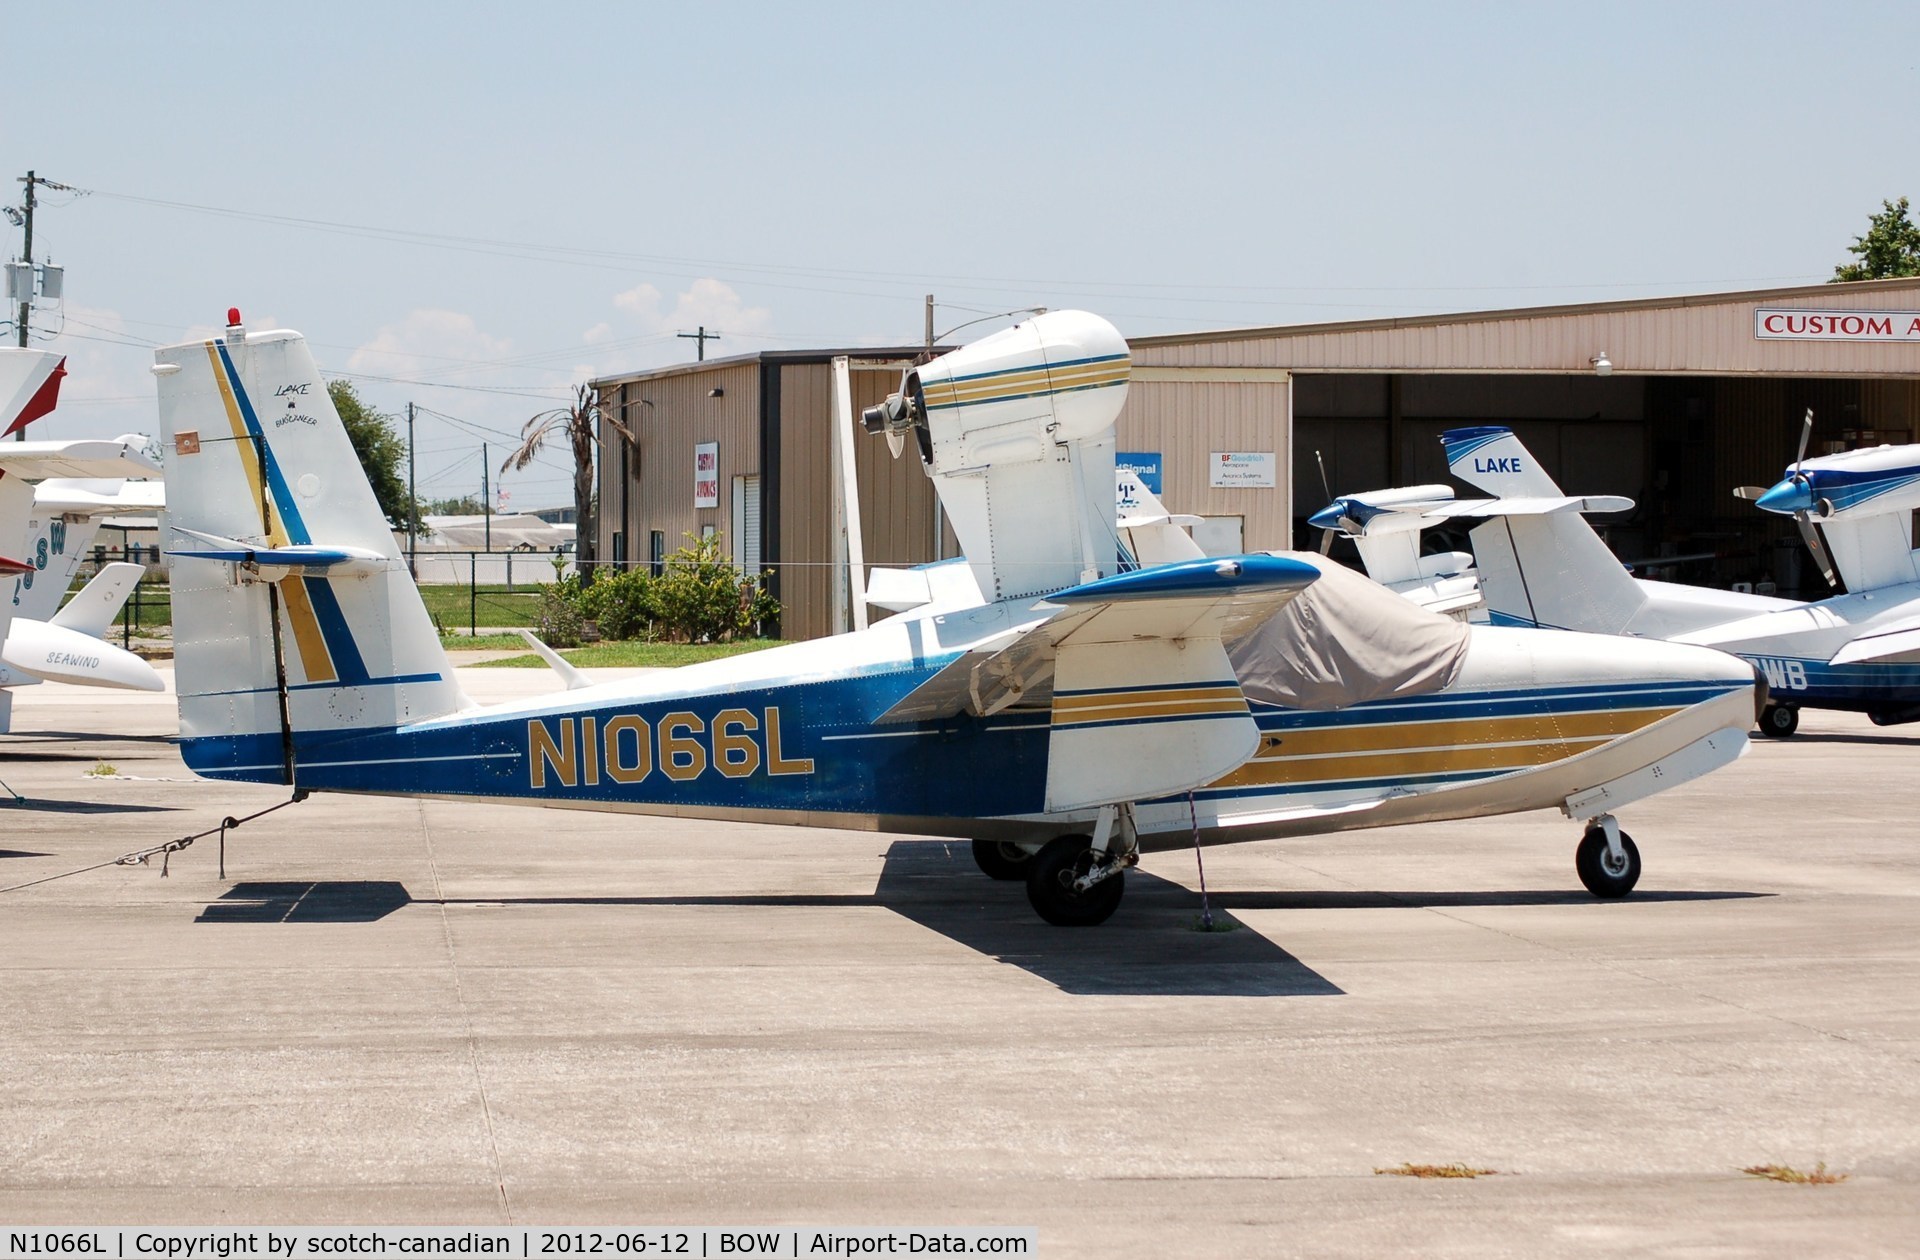 N1066L, 1975 Lake LA-4-200 Buccaneer C/N 659, 1975 Lake LA-4-200 N1066L at Bartow Municipal Airport, Bartow, FL